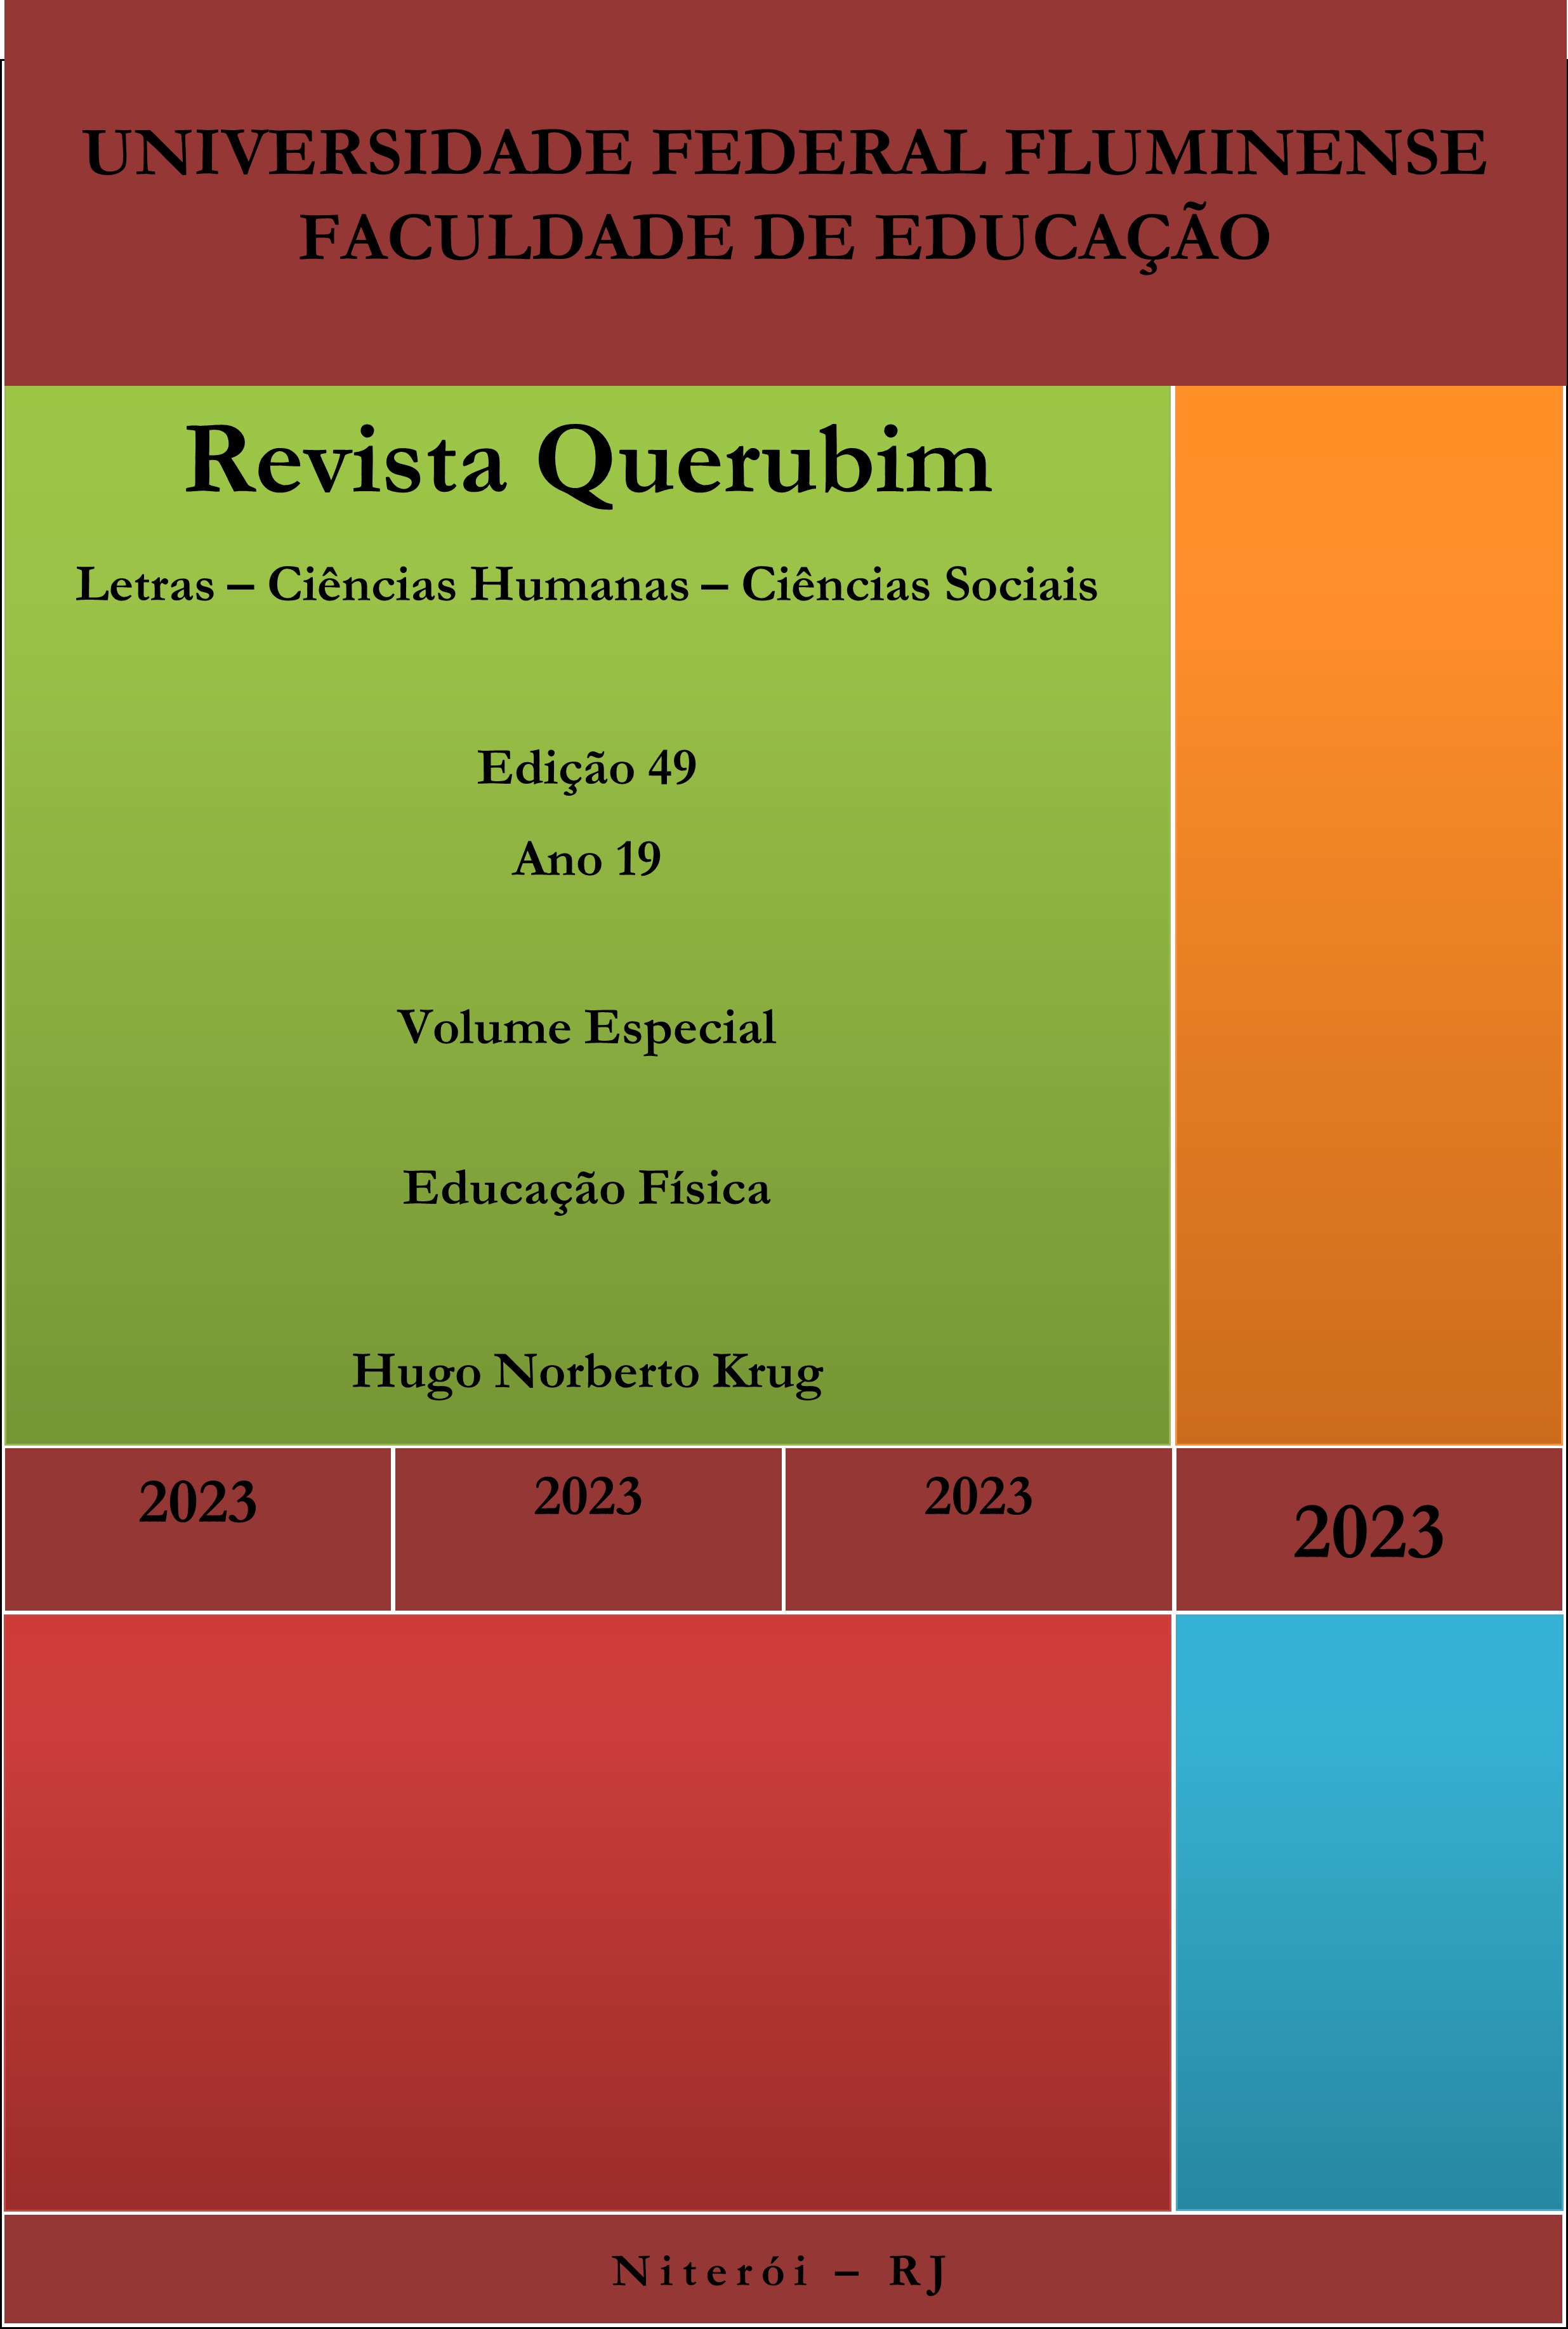 					Ver N.º 49 (2023): Revista Querubim v e Educação Física
				